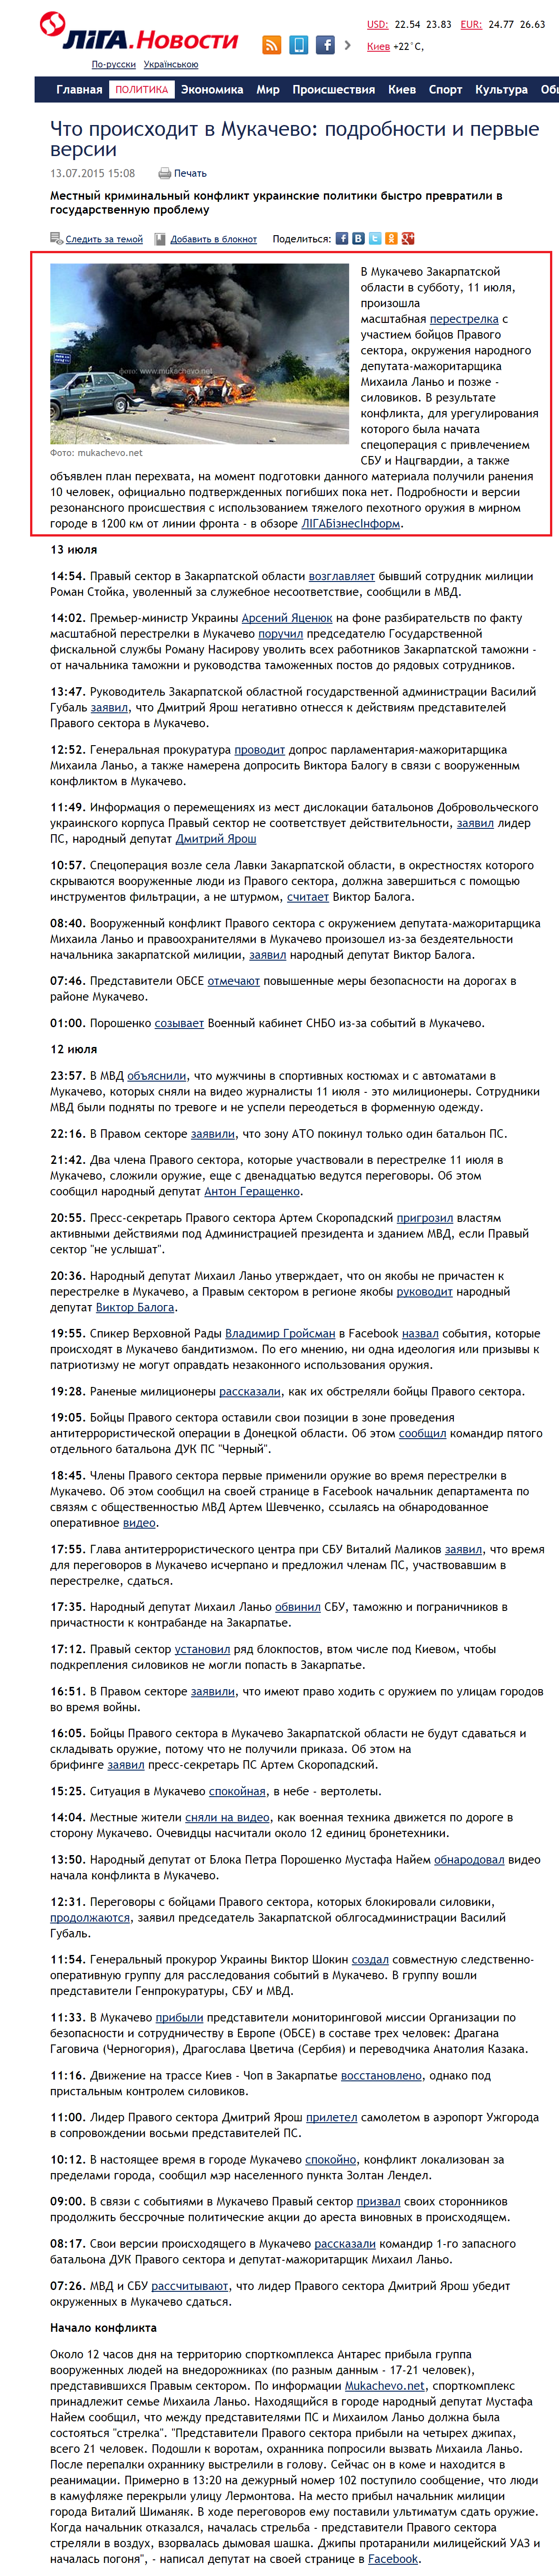 http://news.liga.net/news/politics/6173321-chto_proiskhodit_v_mukachevo_podrobnosti_i_pervye_versii.htm?utm_source=newsliganet&utm_medium=site&utm_term=top_block&utm_campaign=usability